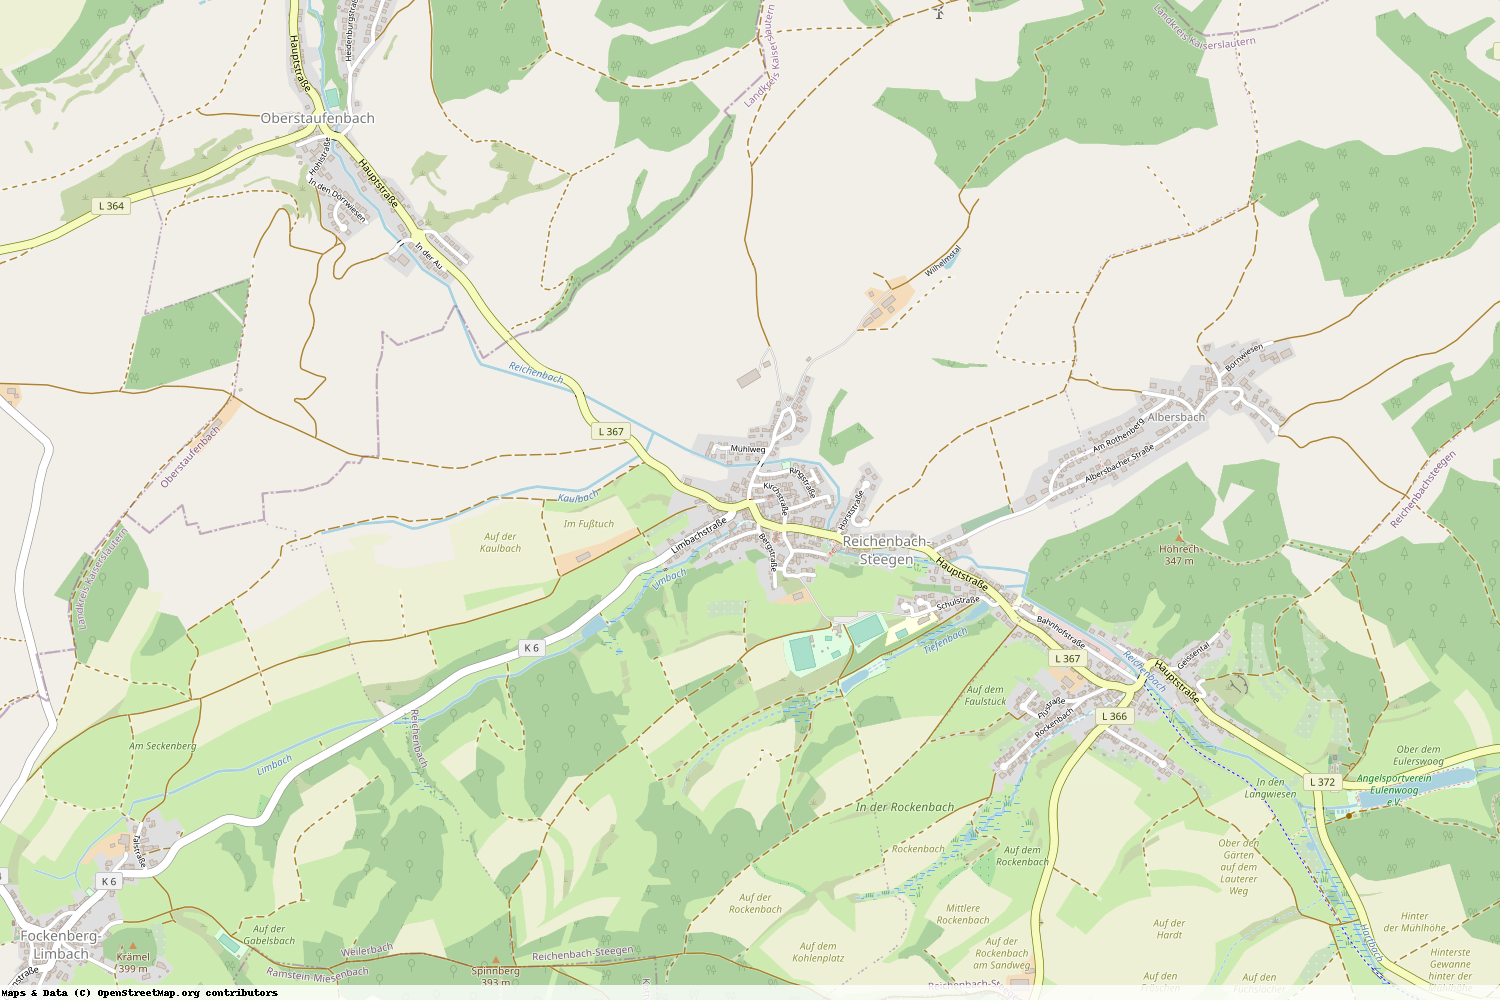 Ist gerade Stromausfall in Rheinland-Pfalz - Kaiserslautern - Reichenbach-Steegen?